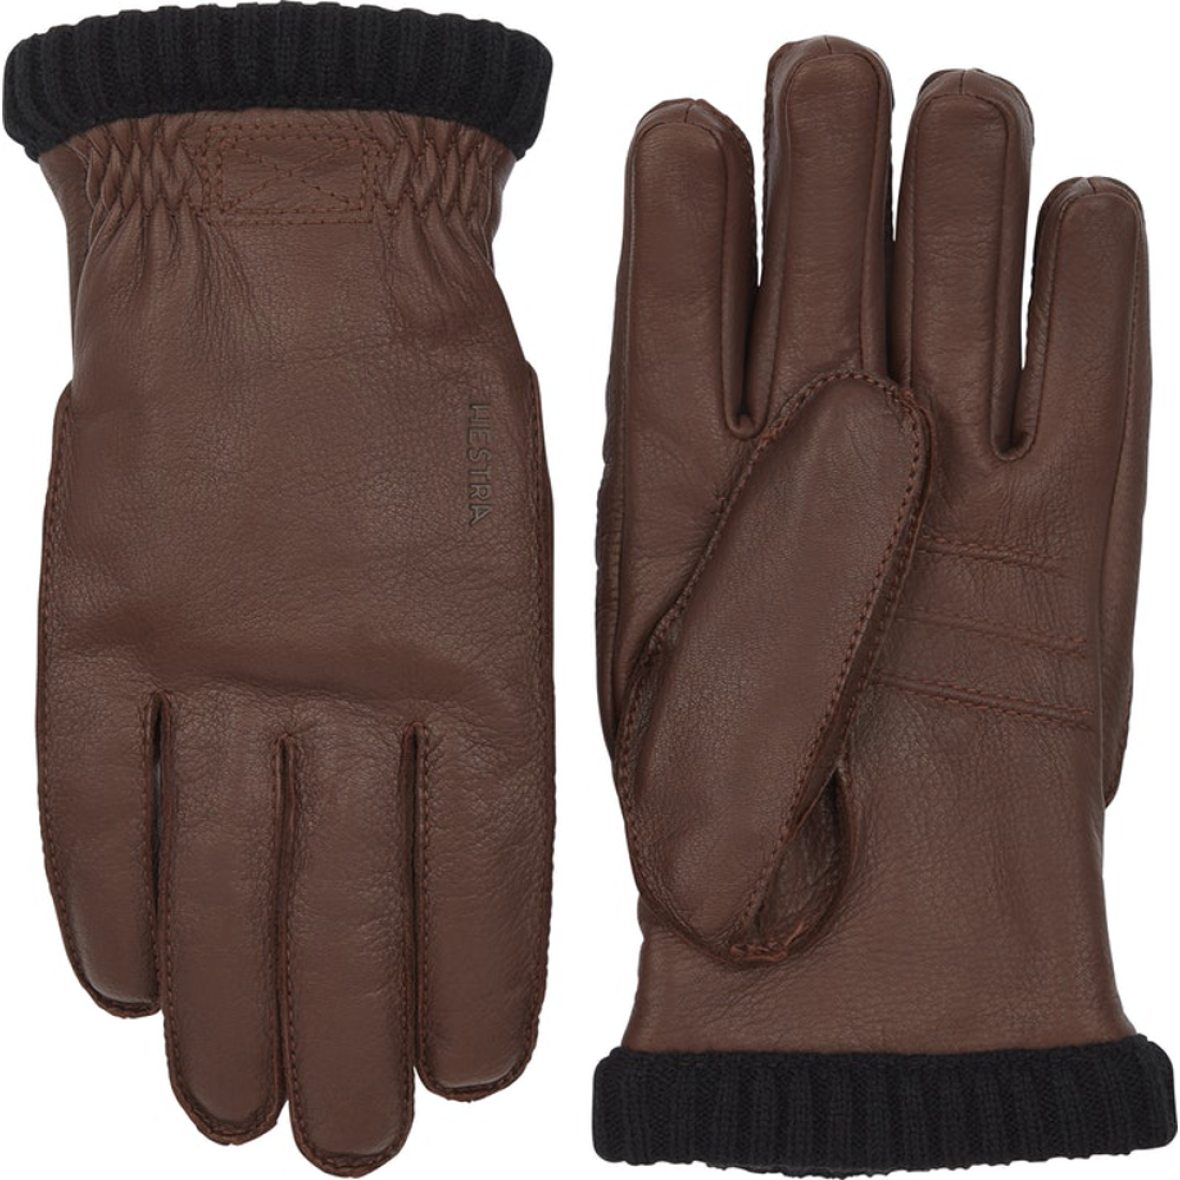 praktisk knude tilskadekomne Deerskin Primaloft Handsker - Find kvalitets handsker fra Hestra her!